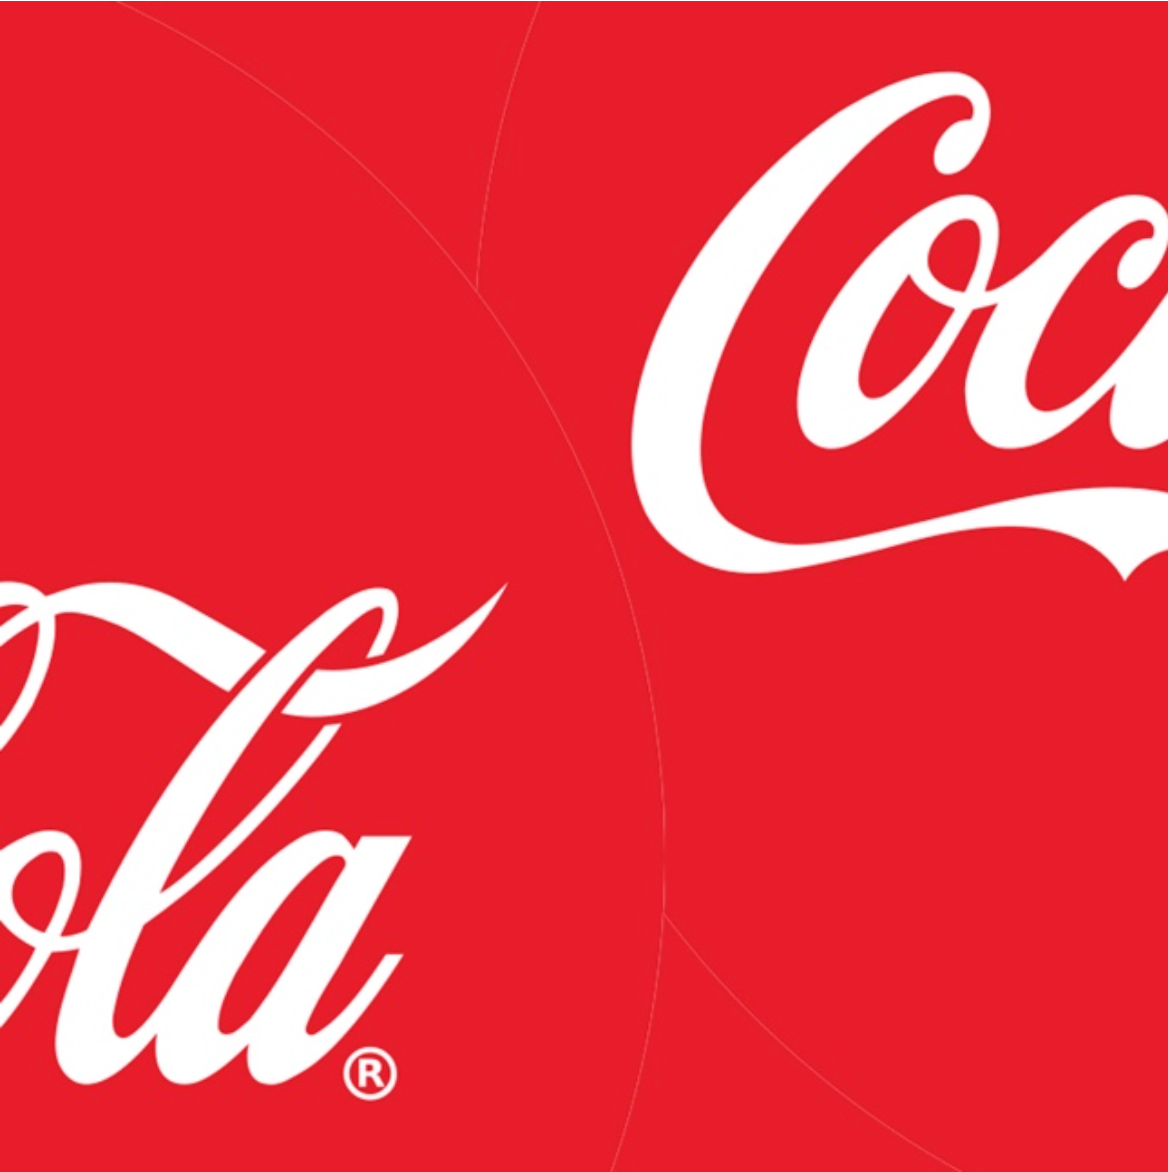 Las collabs de Coca Cola